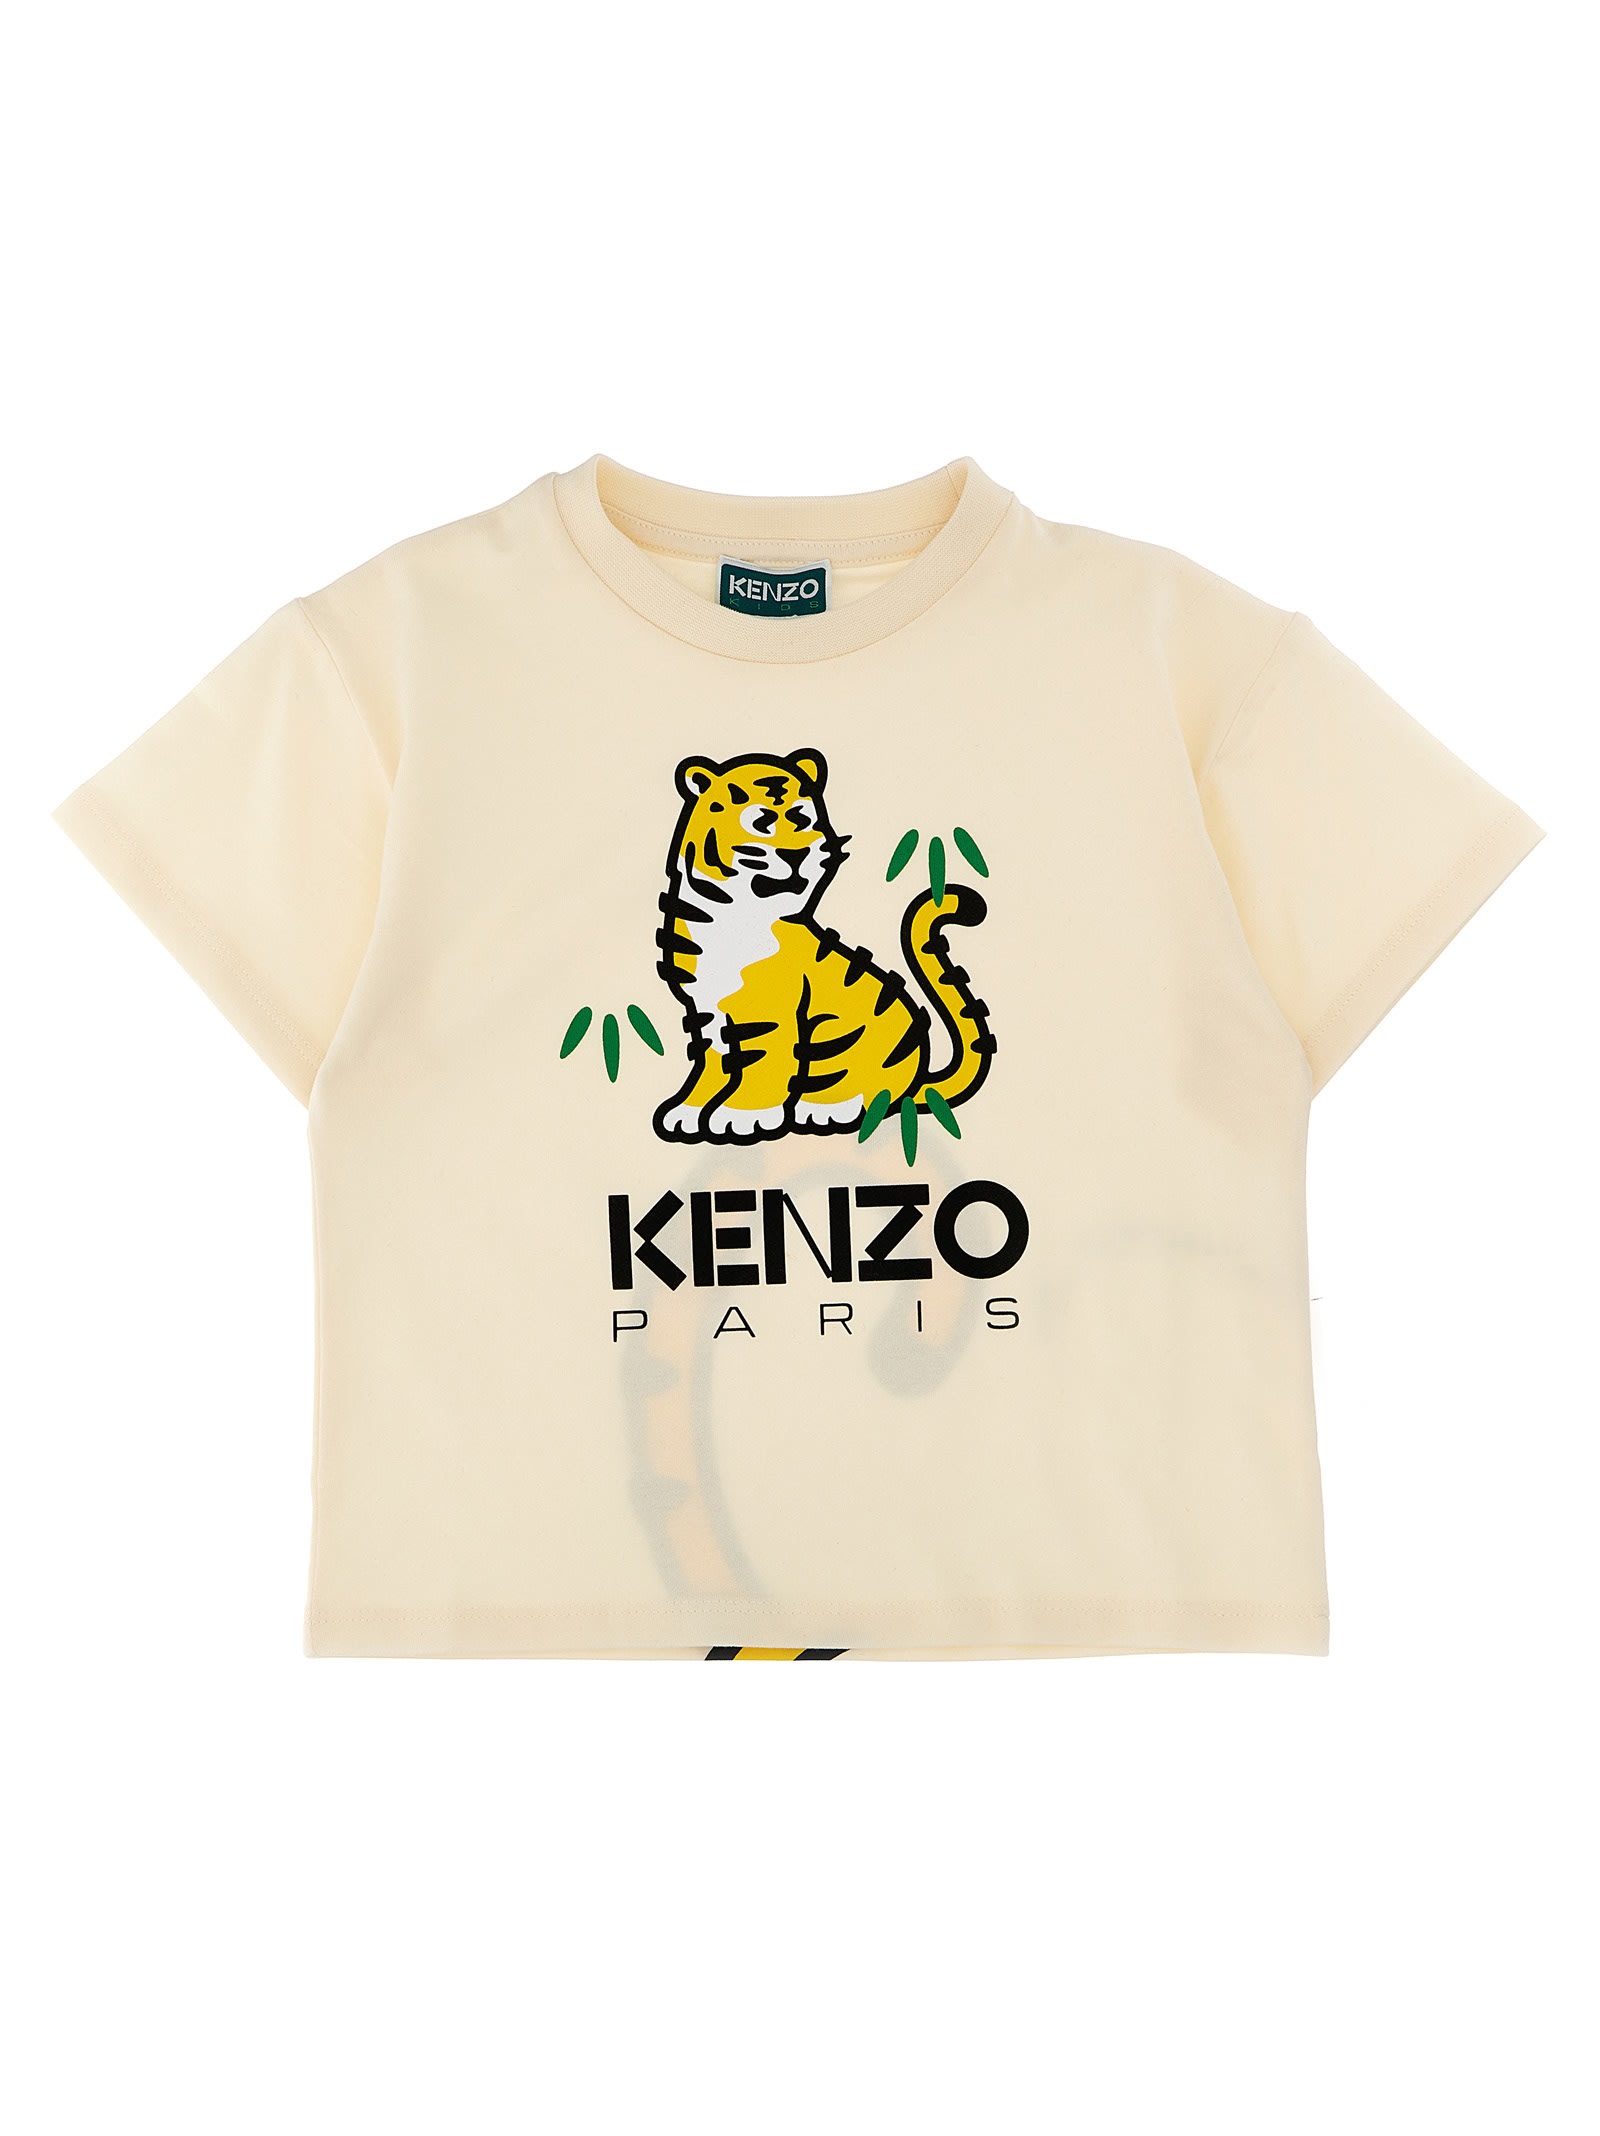 KENZO PRINTED T-SHIRT